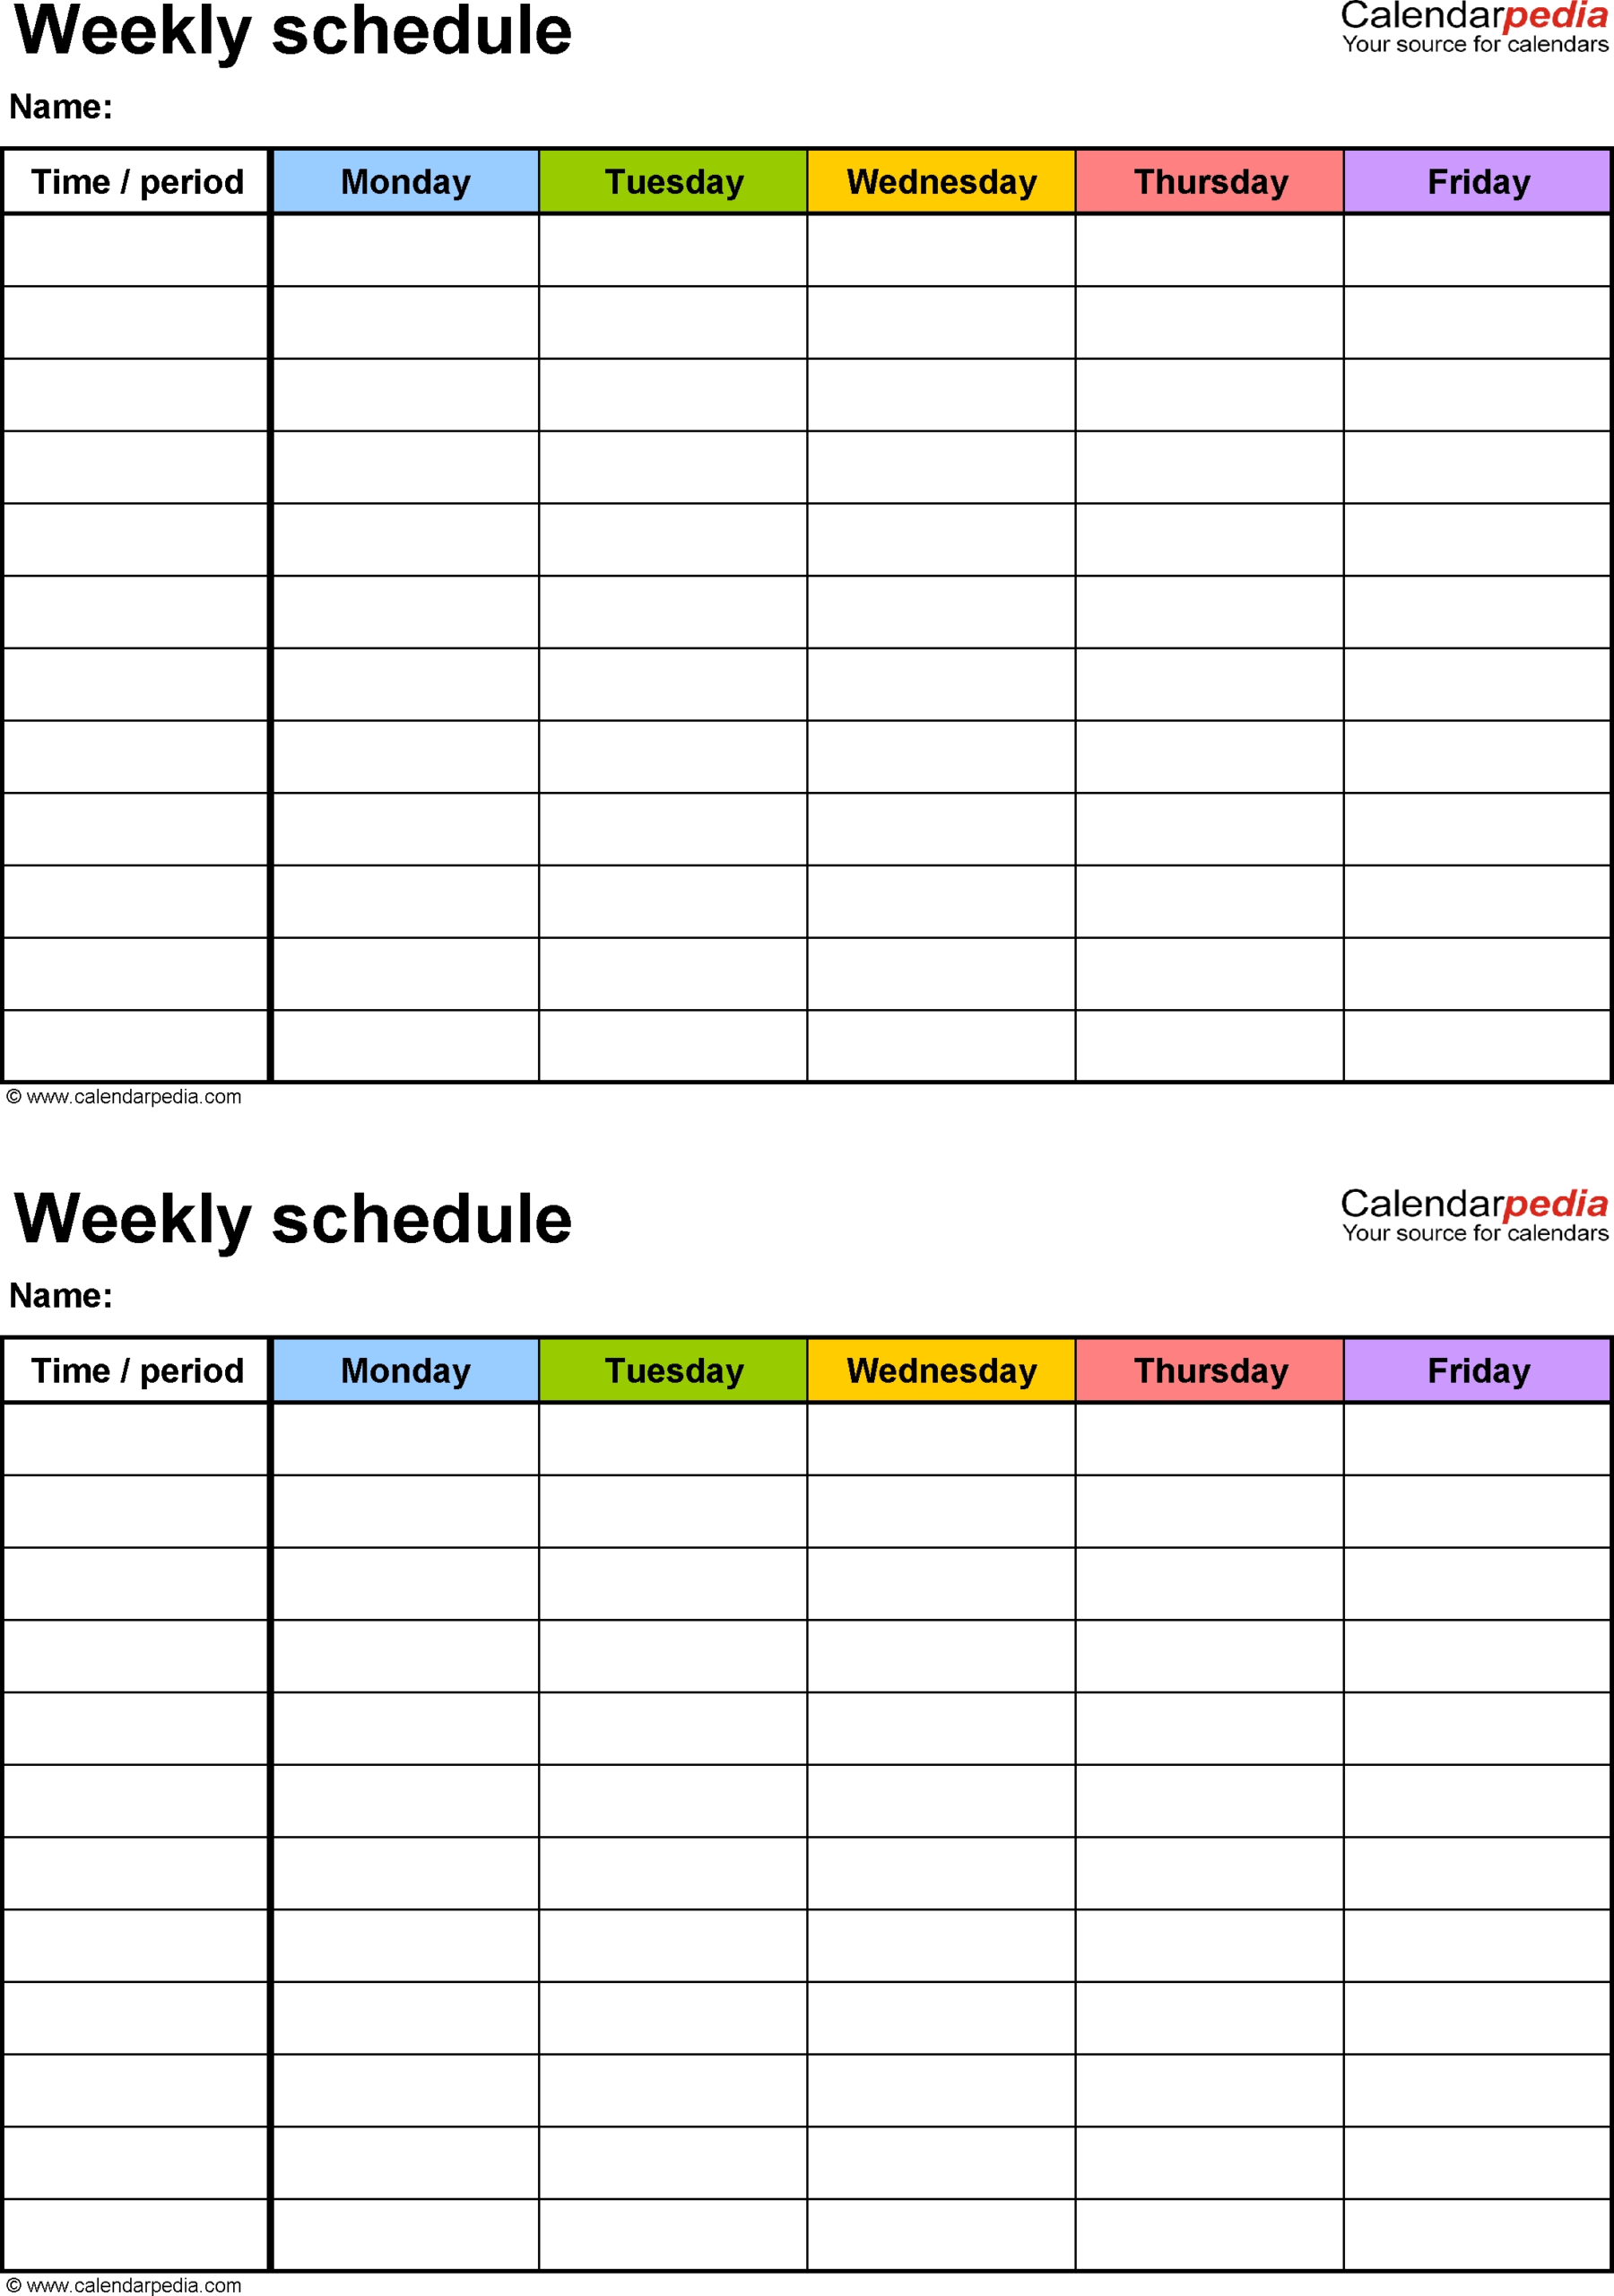 Blank Monday Through Friday Pdf | Calendar Template Printable with regard to Weekly Calendar Monday Through Friday